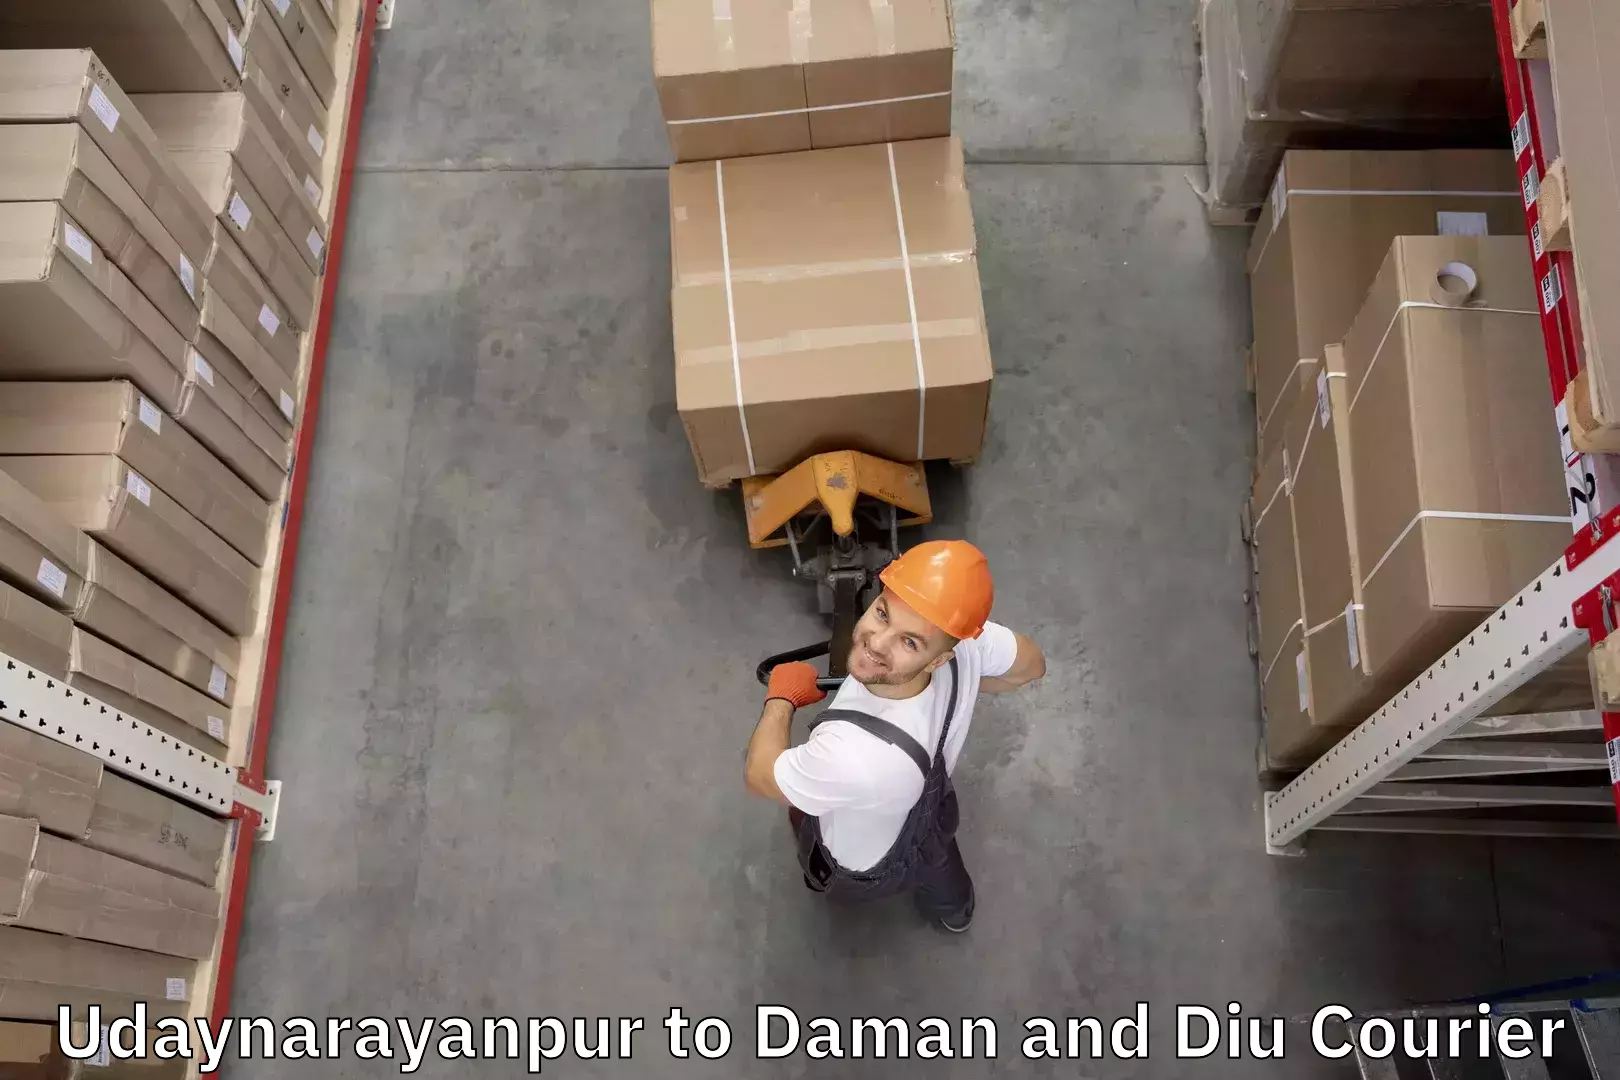 Luggage transit service Udaynarayanpur to Daman